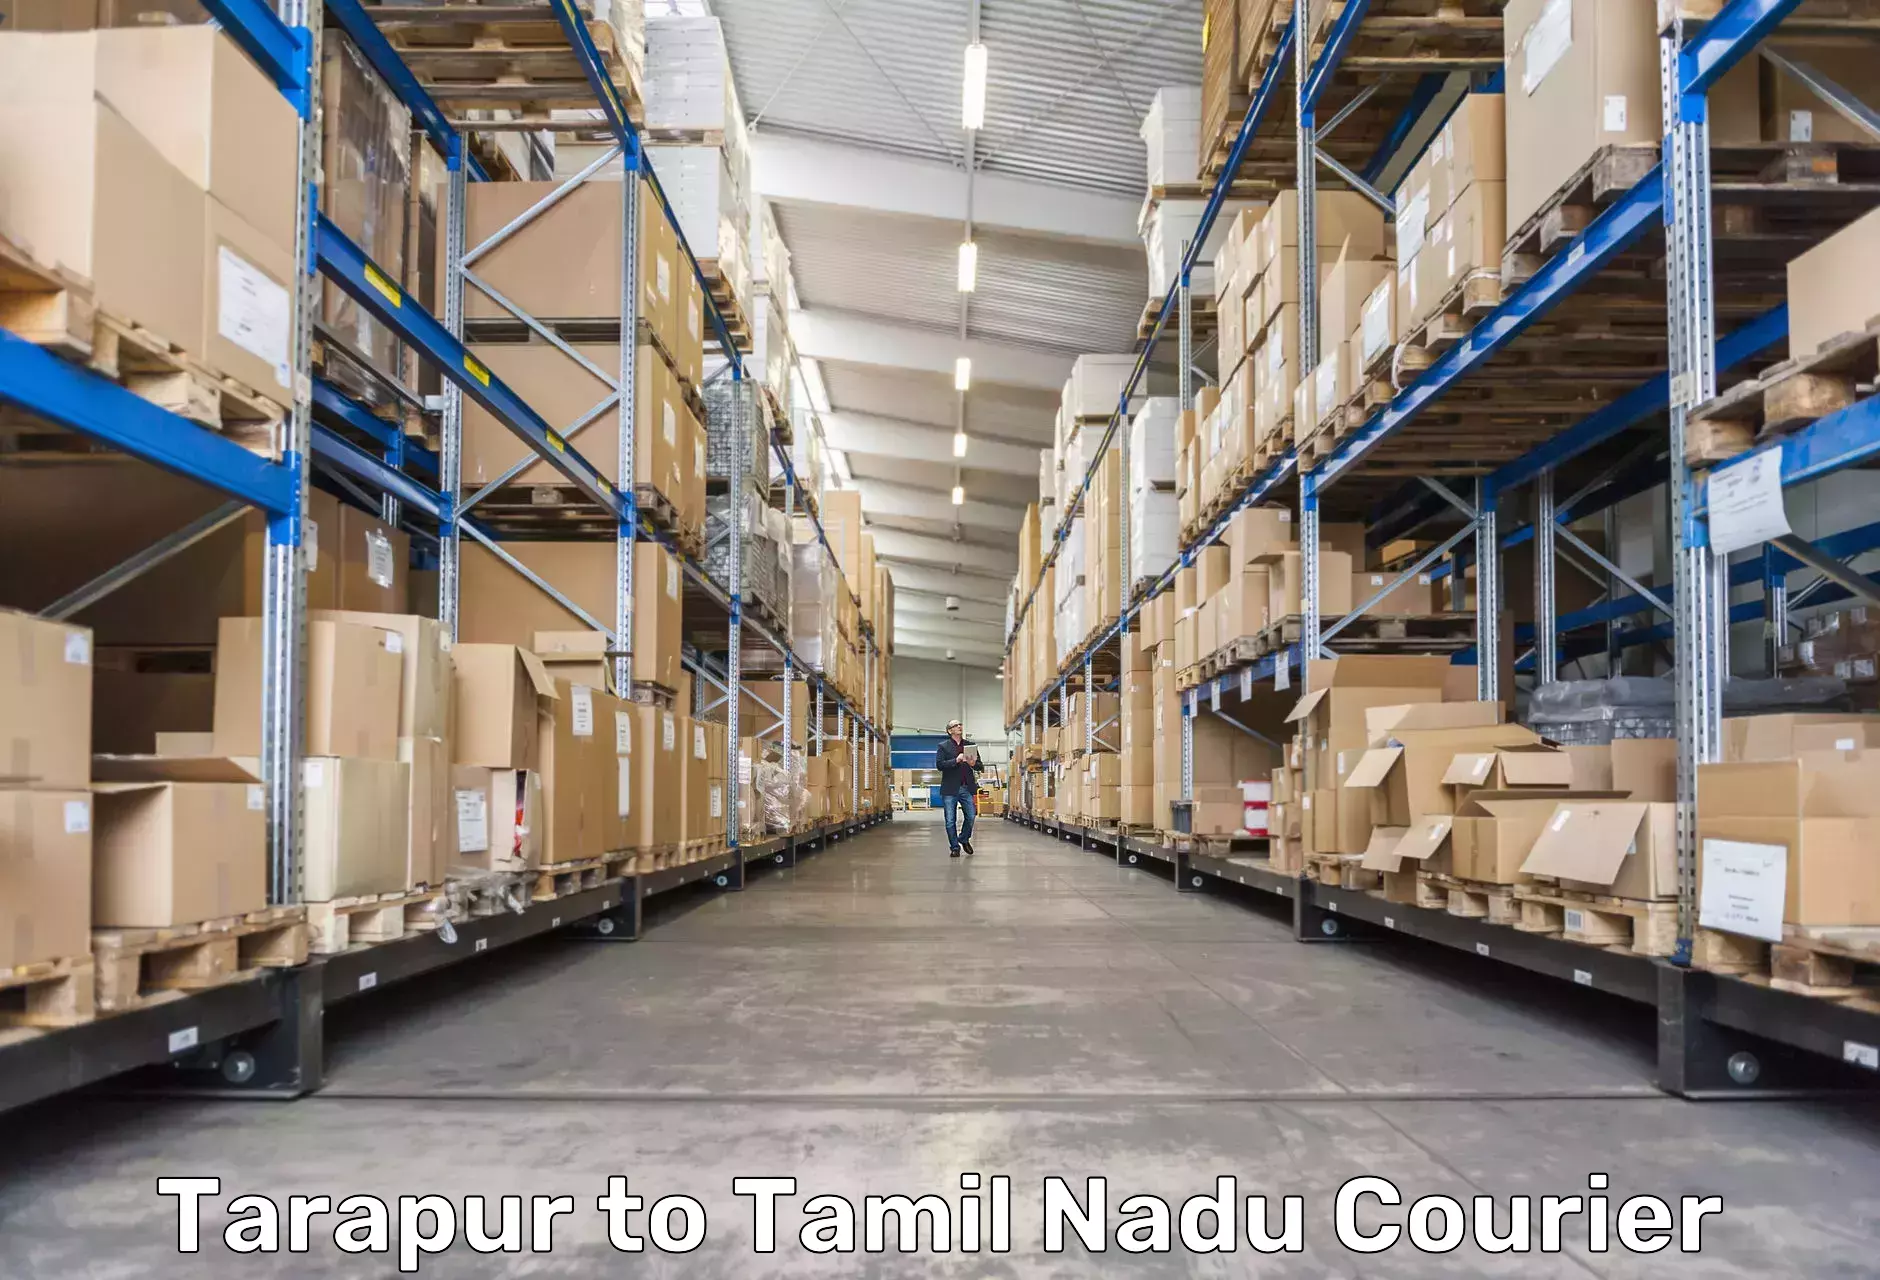 Cargo courier service Tarapur to Ambattur